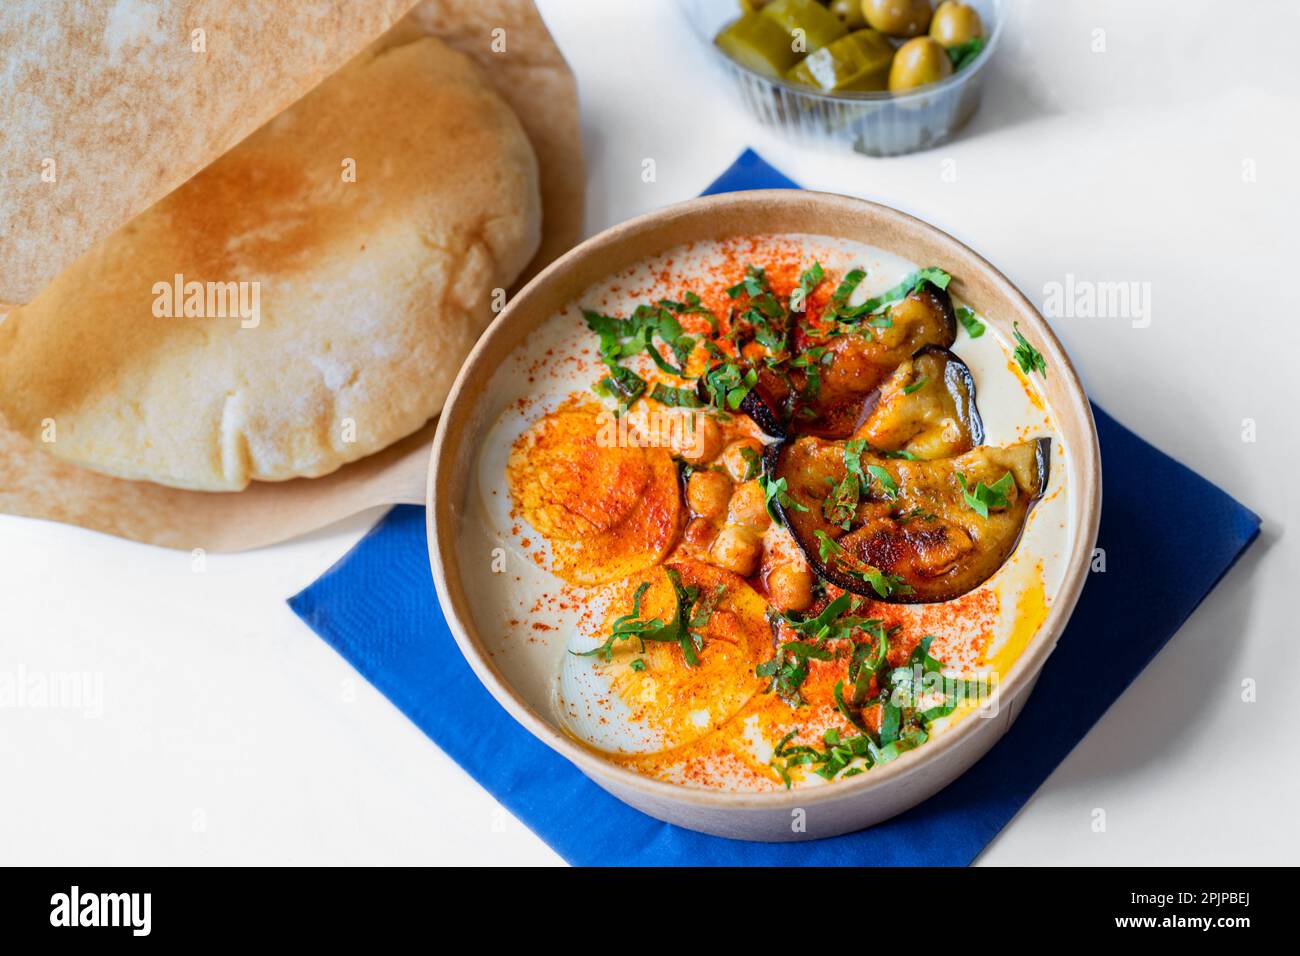 Schüssel mit Hummus, in Scheiben gekochtem Ei, gerösteten Auberginen und grünem Shoot, Brot und Oliven auf blauer Serviette auf weißem Hintergrund. Stockfoto